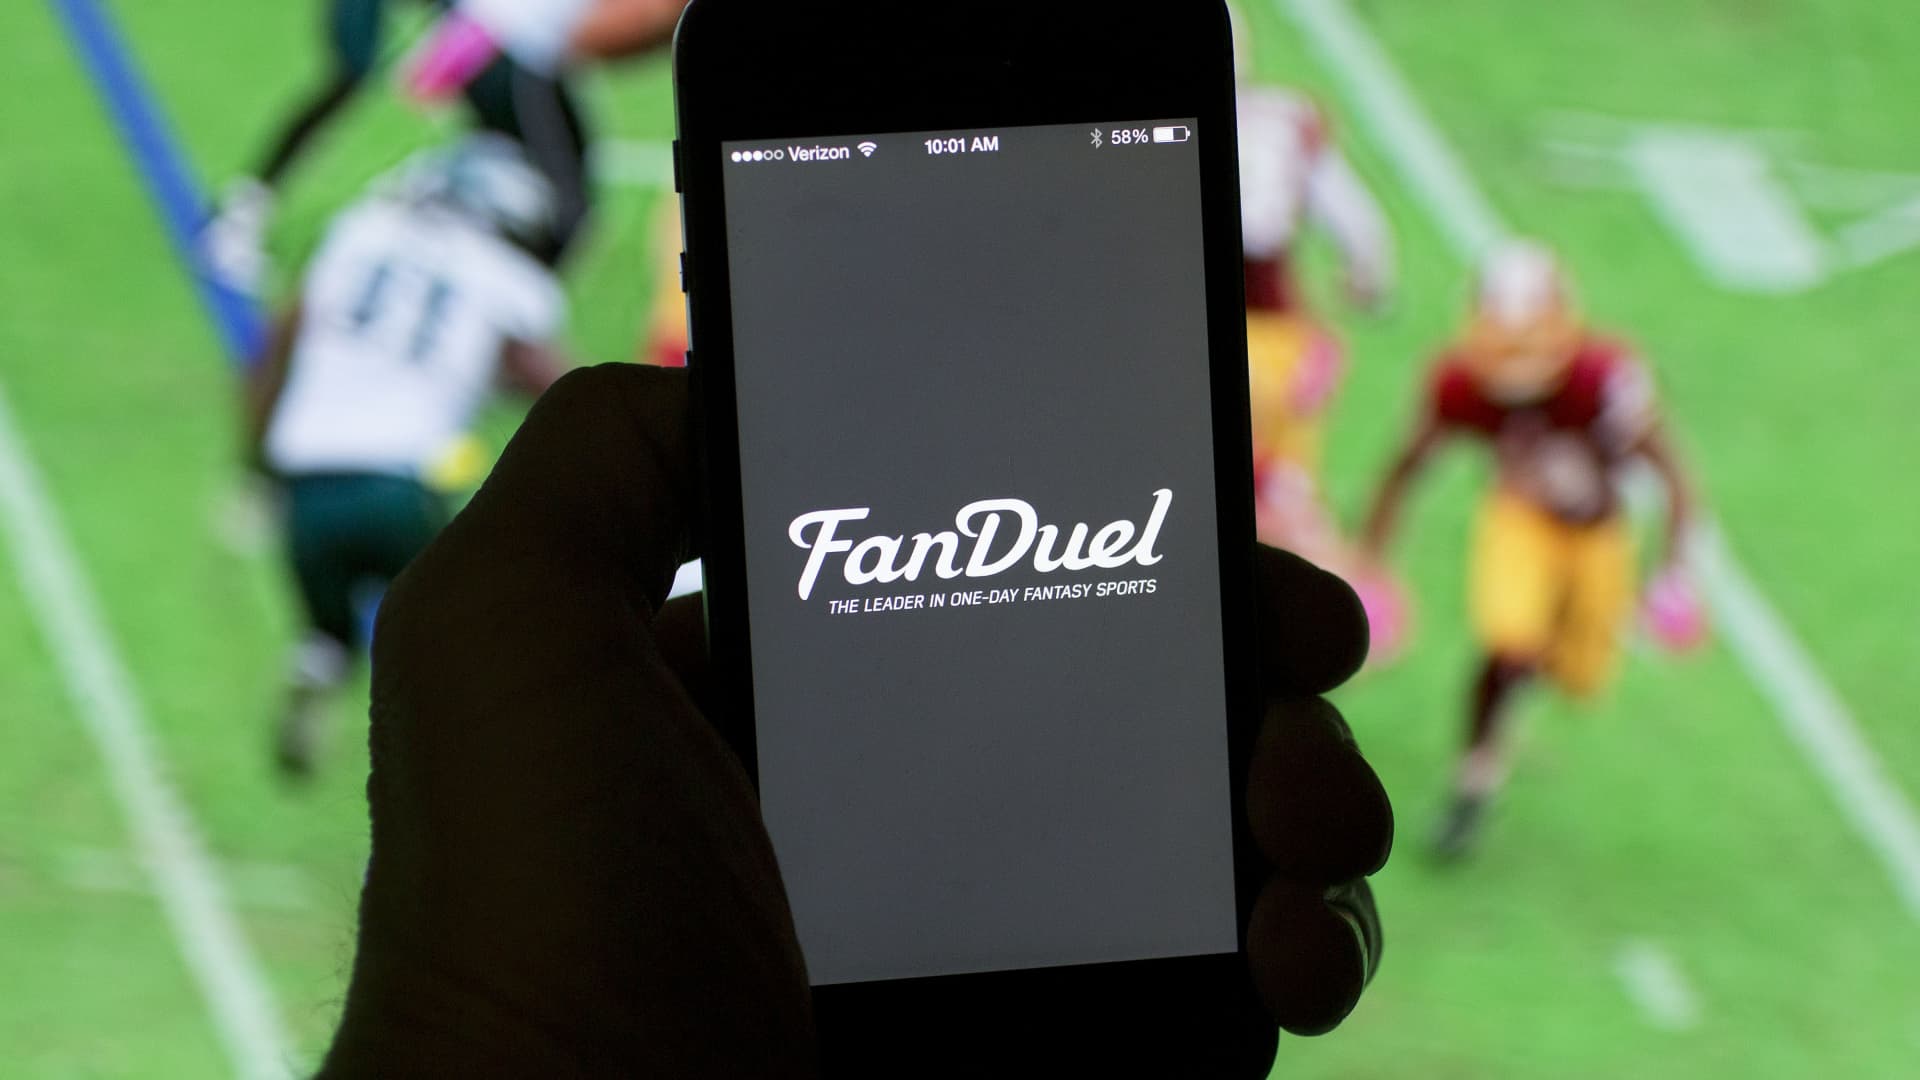 FanDuel app